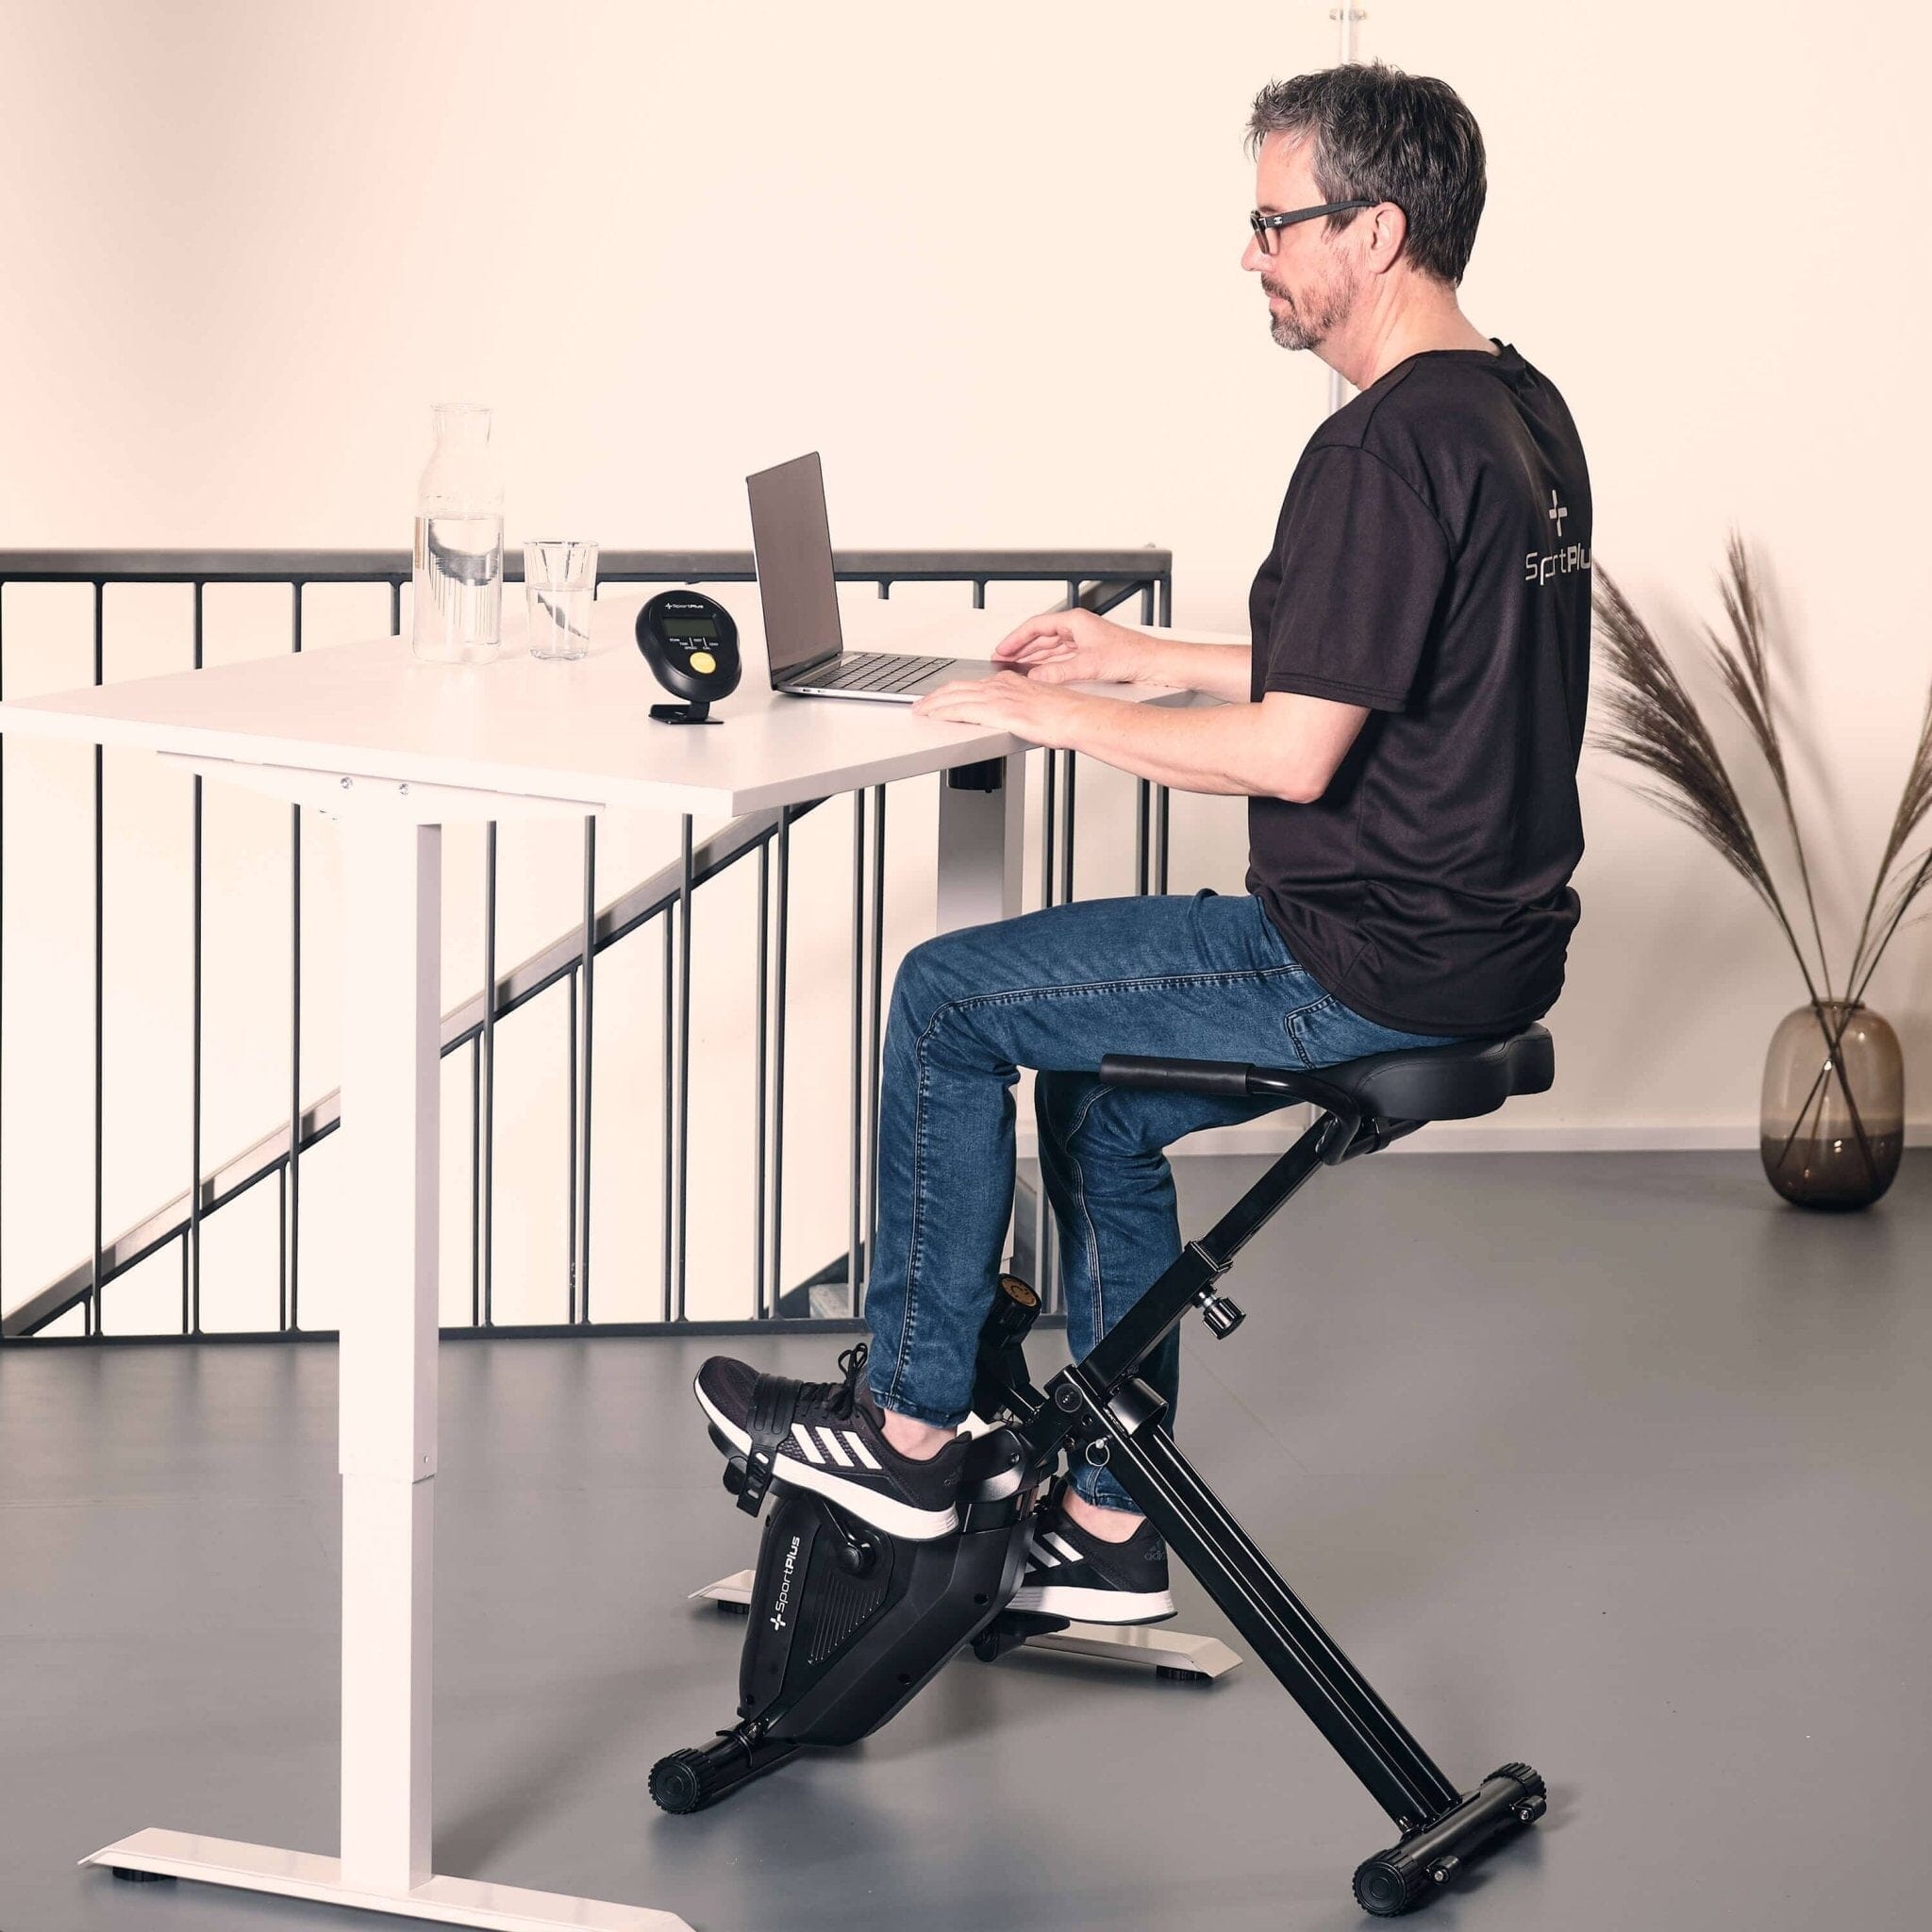 Deskbike: Foldable leg trainer for the desk